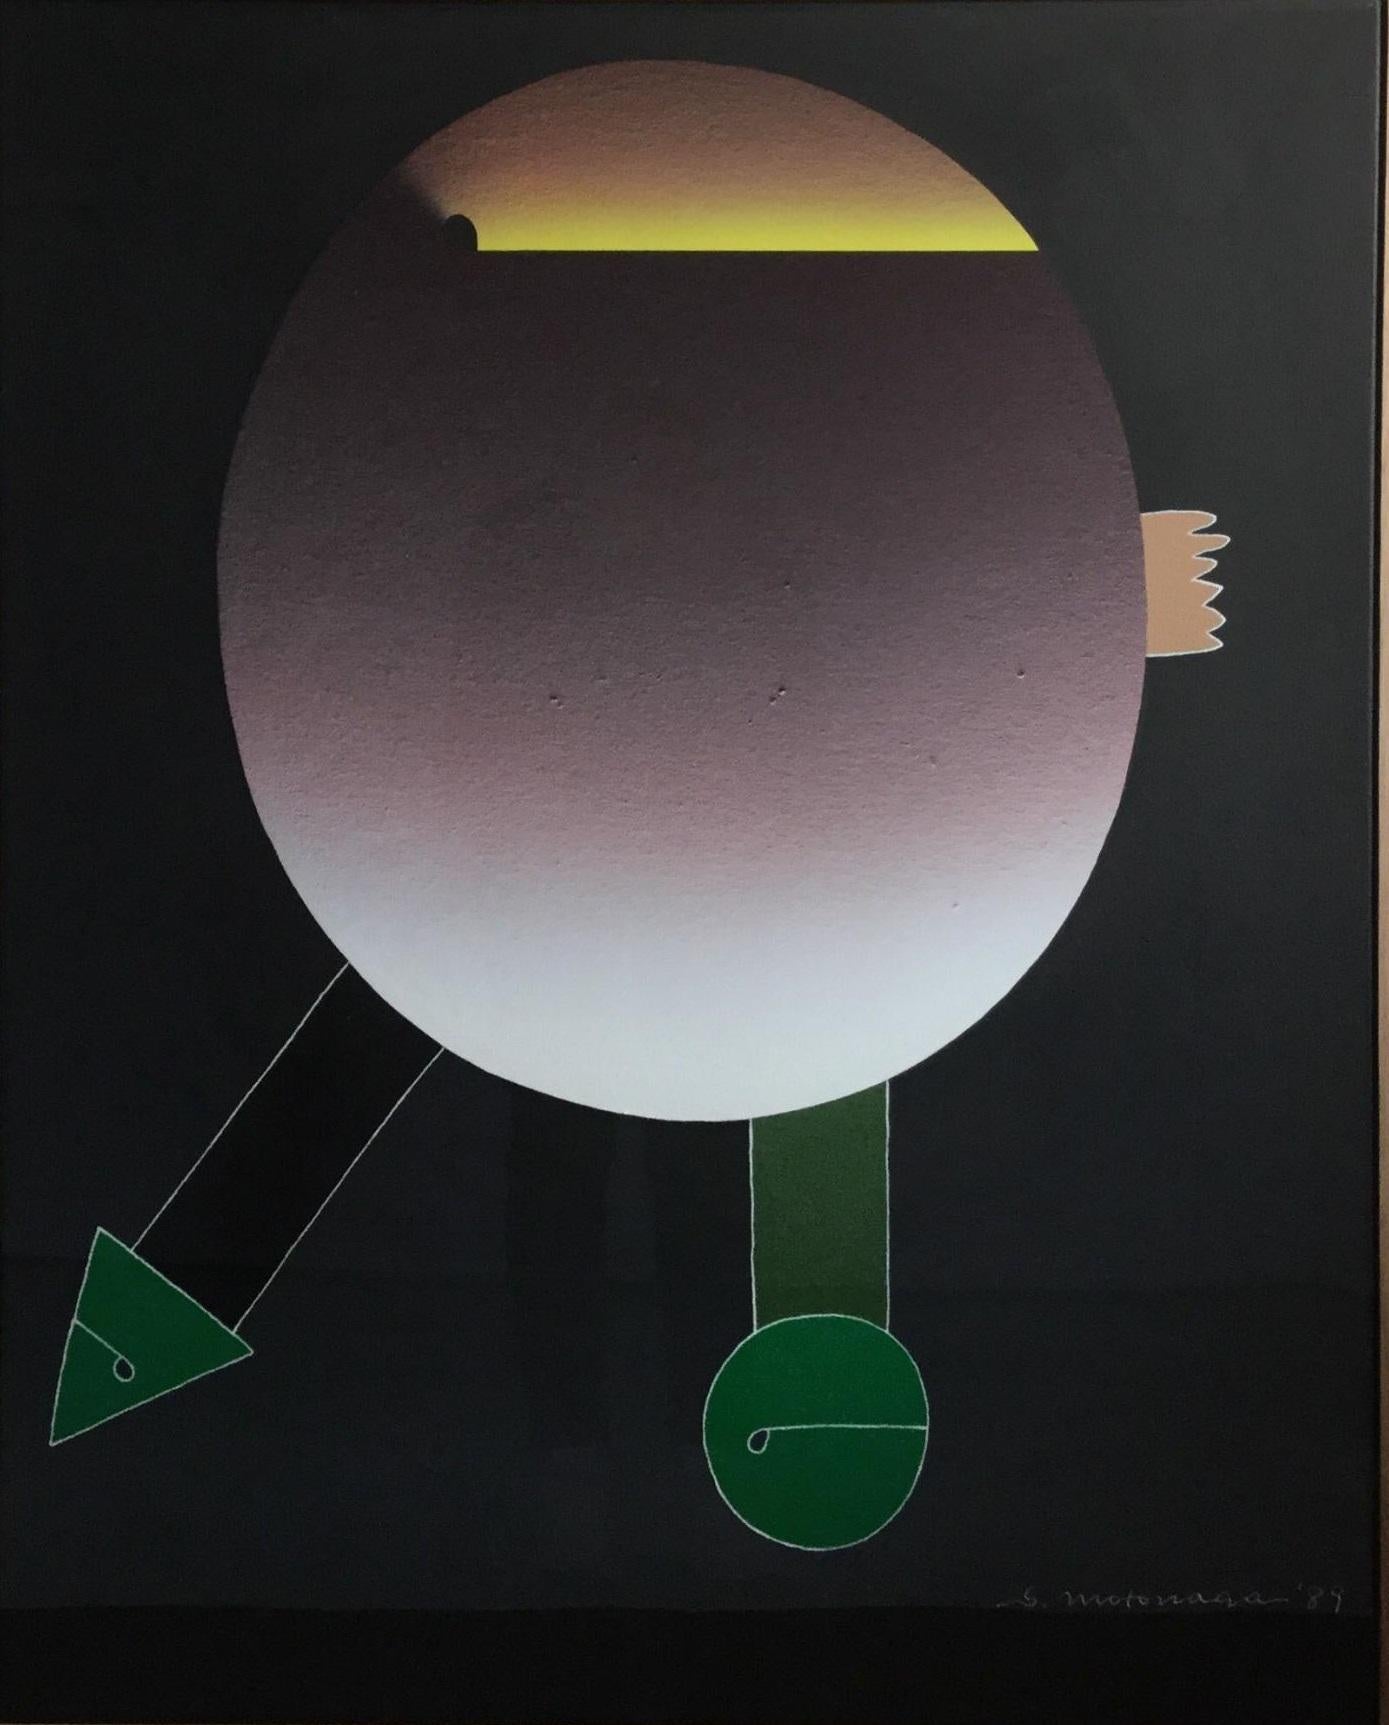 The Circle, Triangle, and Green acrylic on canvas painting by Sadamasa Motonaga 